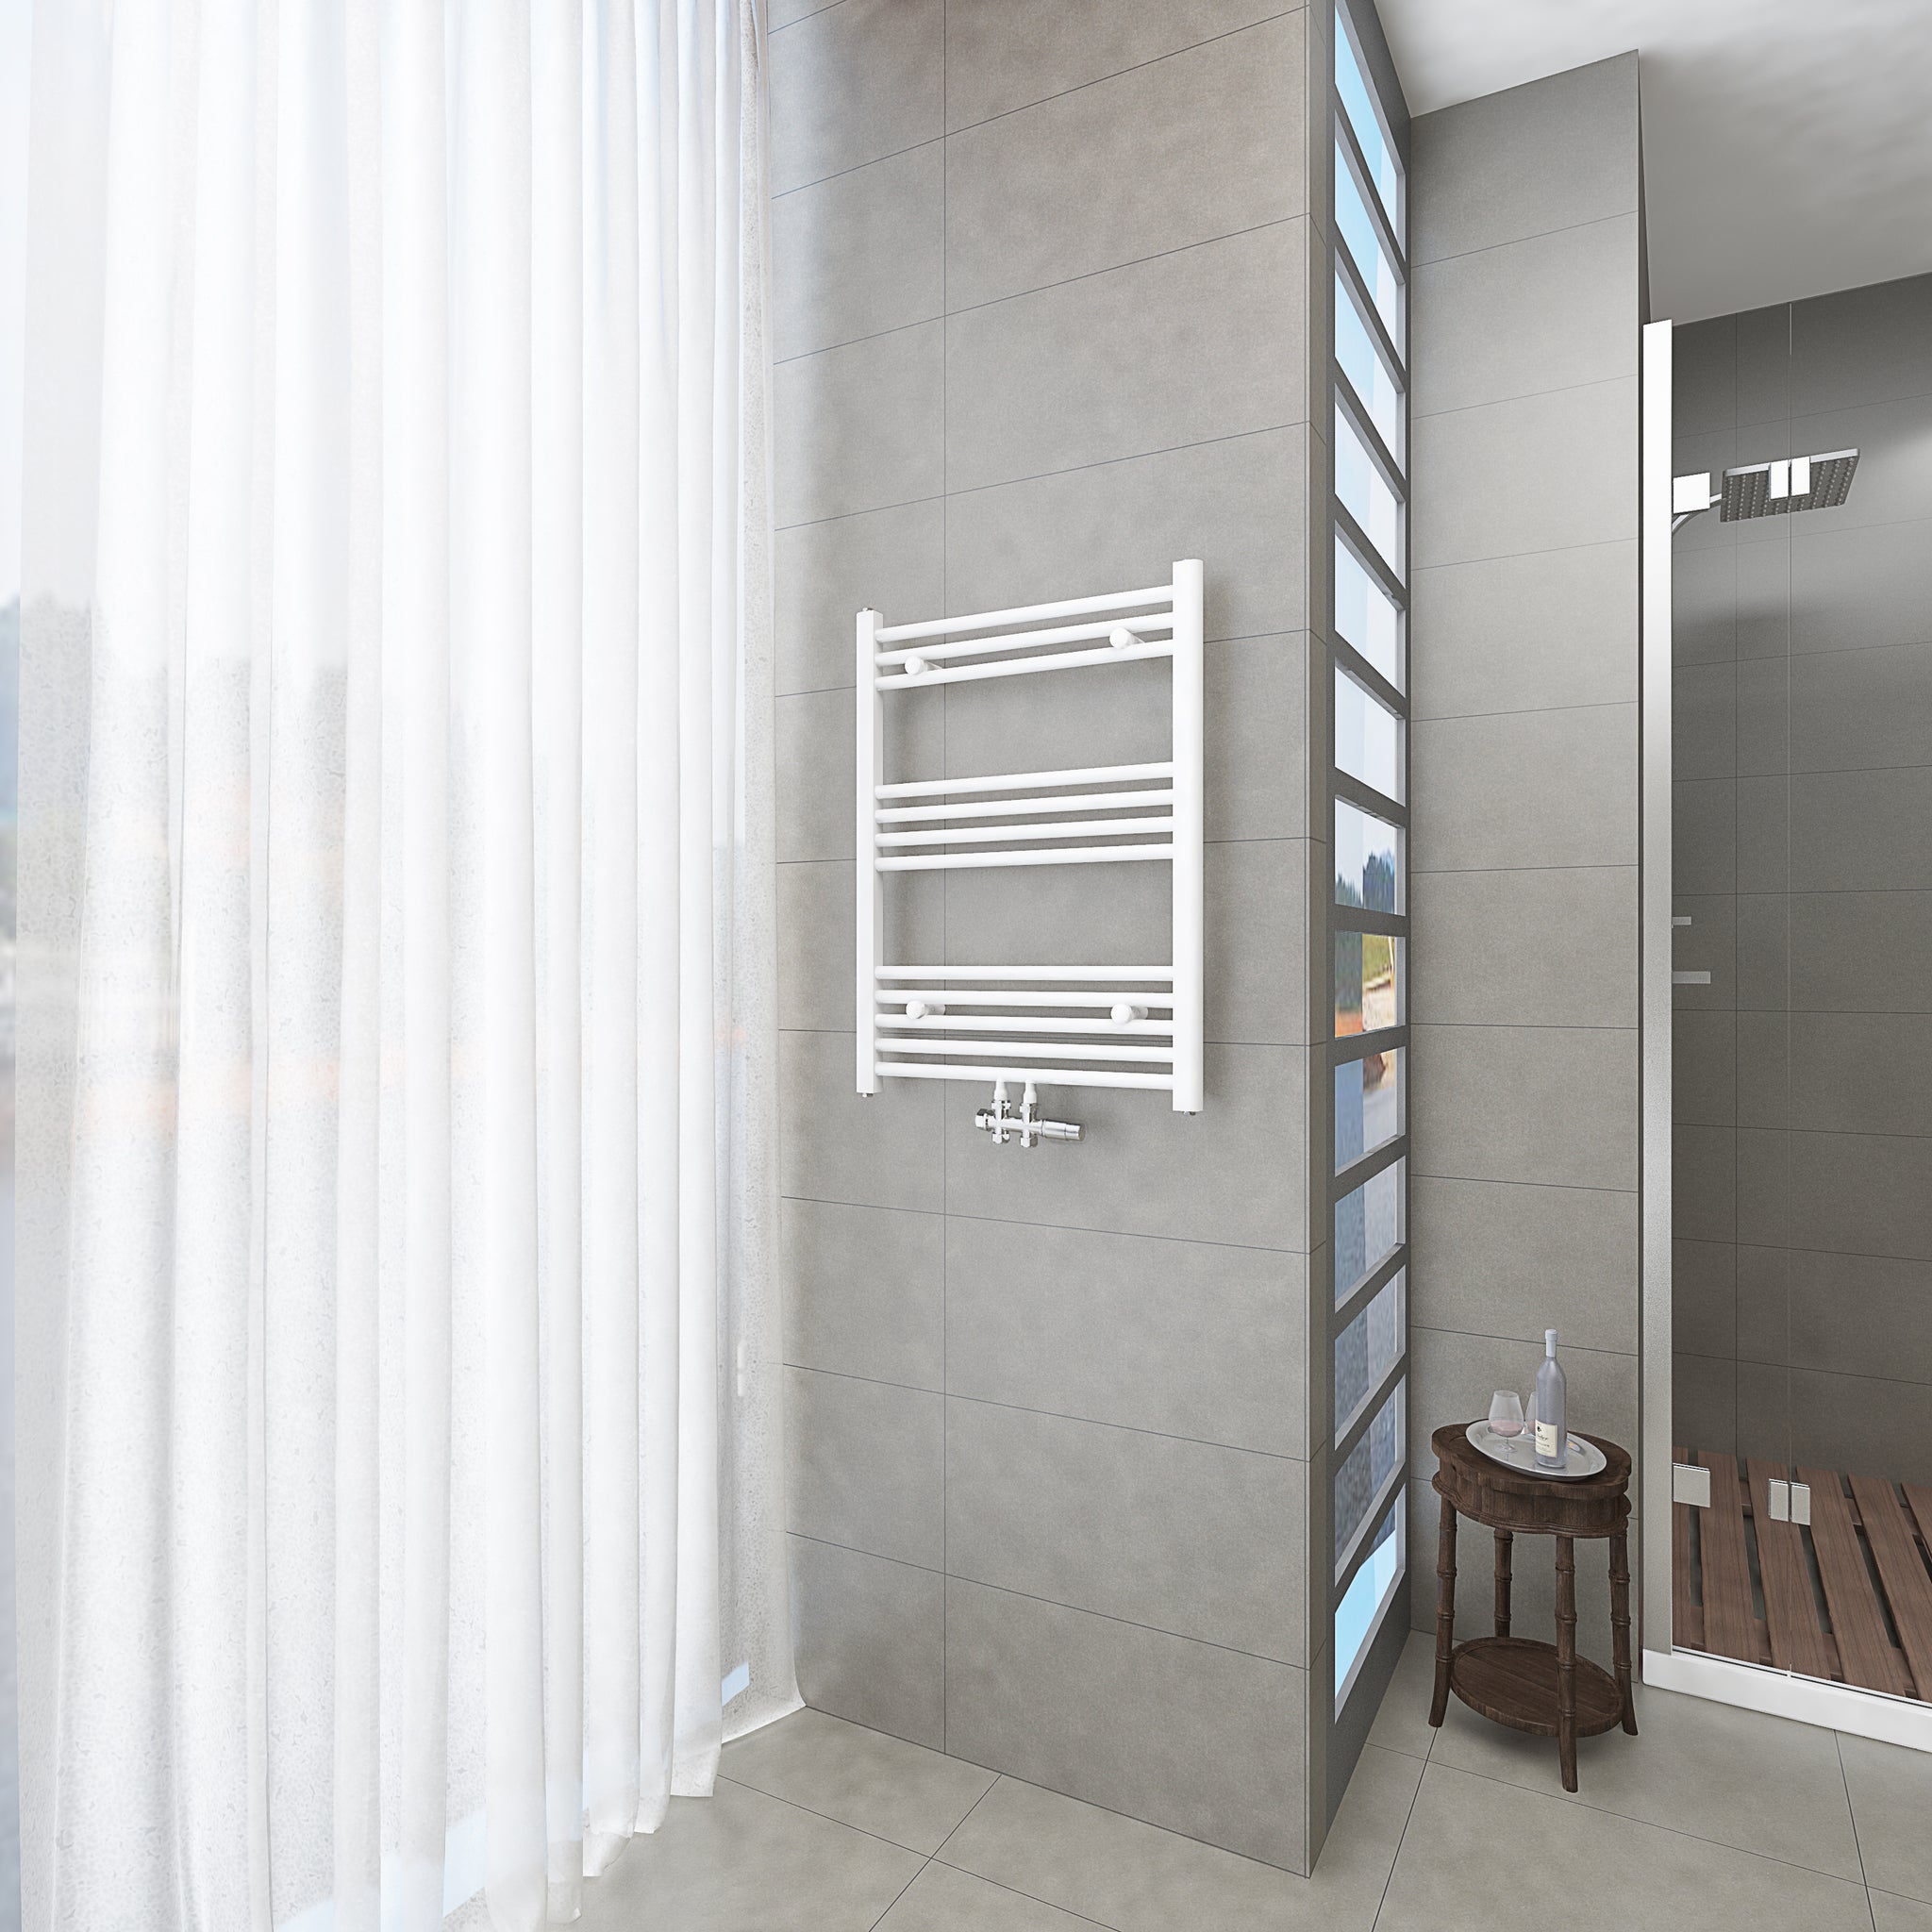 Badheizkörper Weiß - 80x60 CM Heizkörper und Handtuchtrockner in einem - Mittelanschluss - Rauchfreie Kohleheizung für das Badezimmer